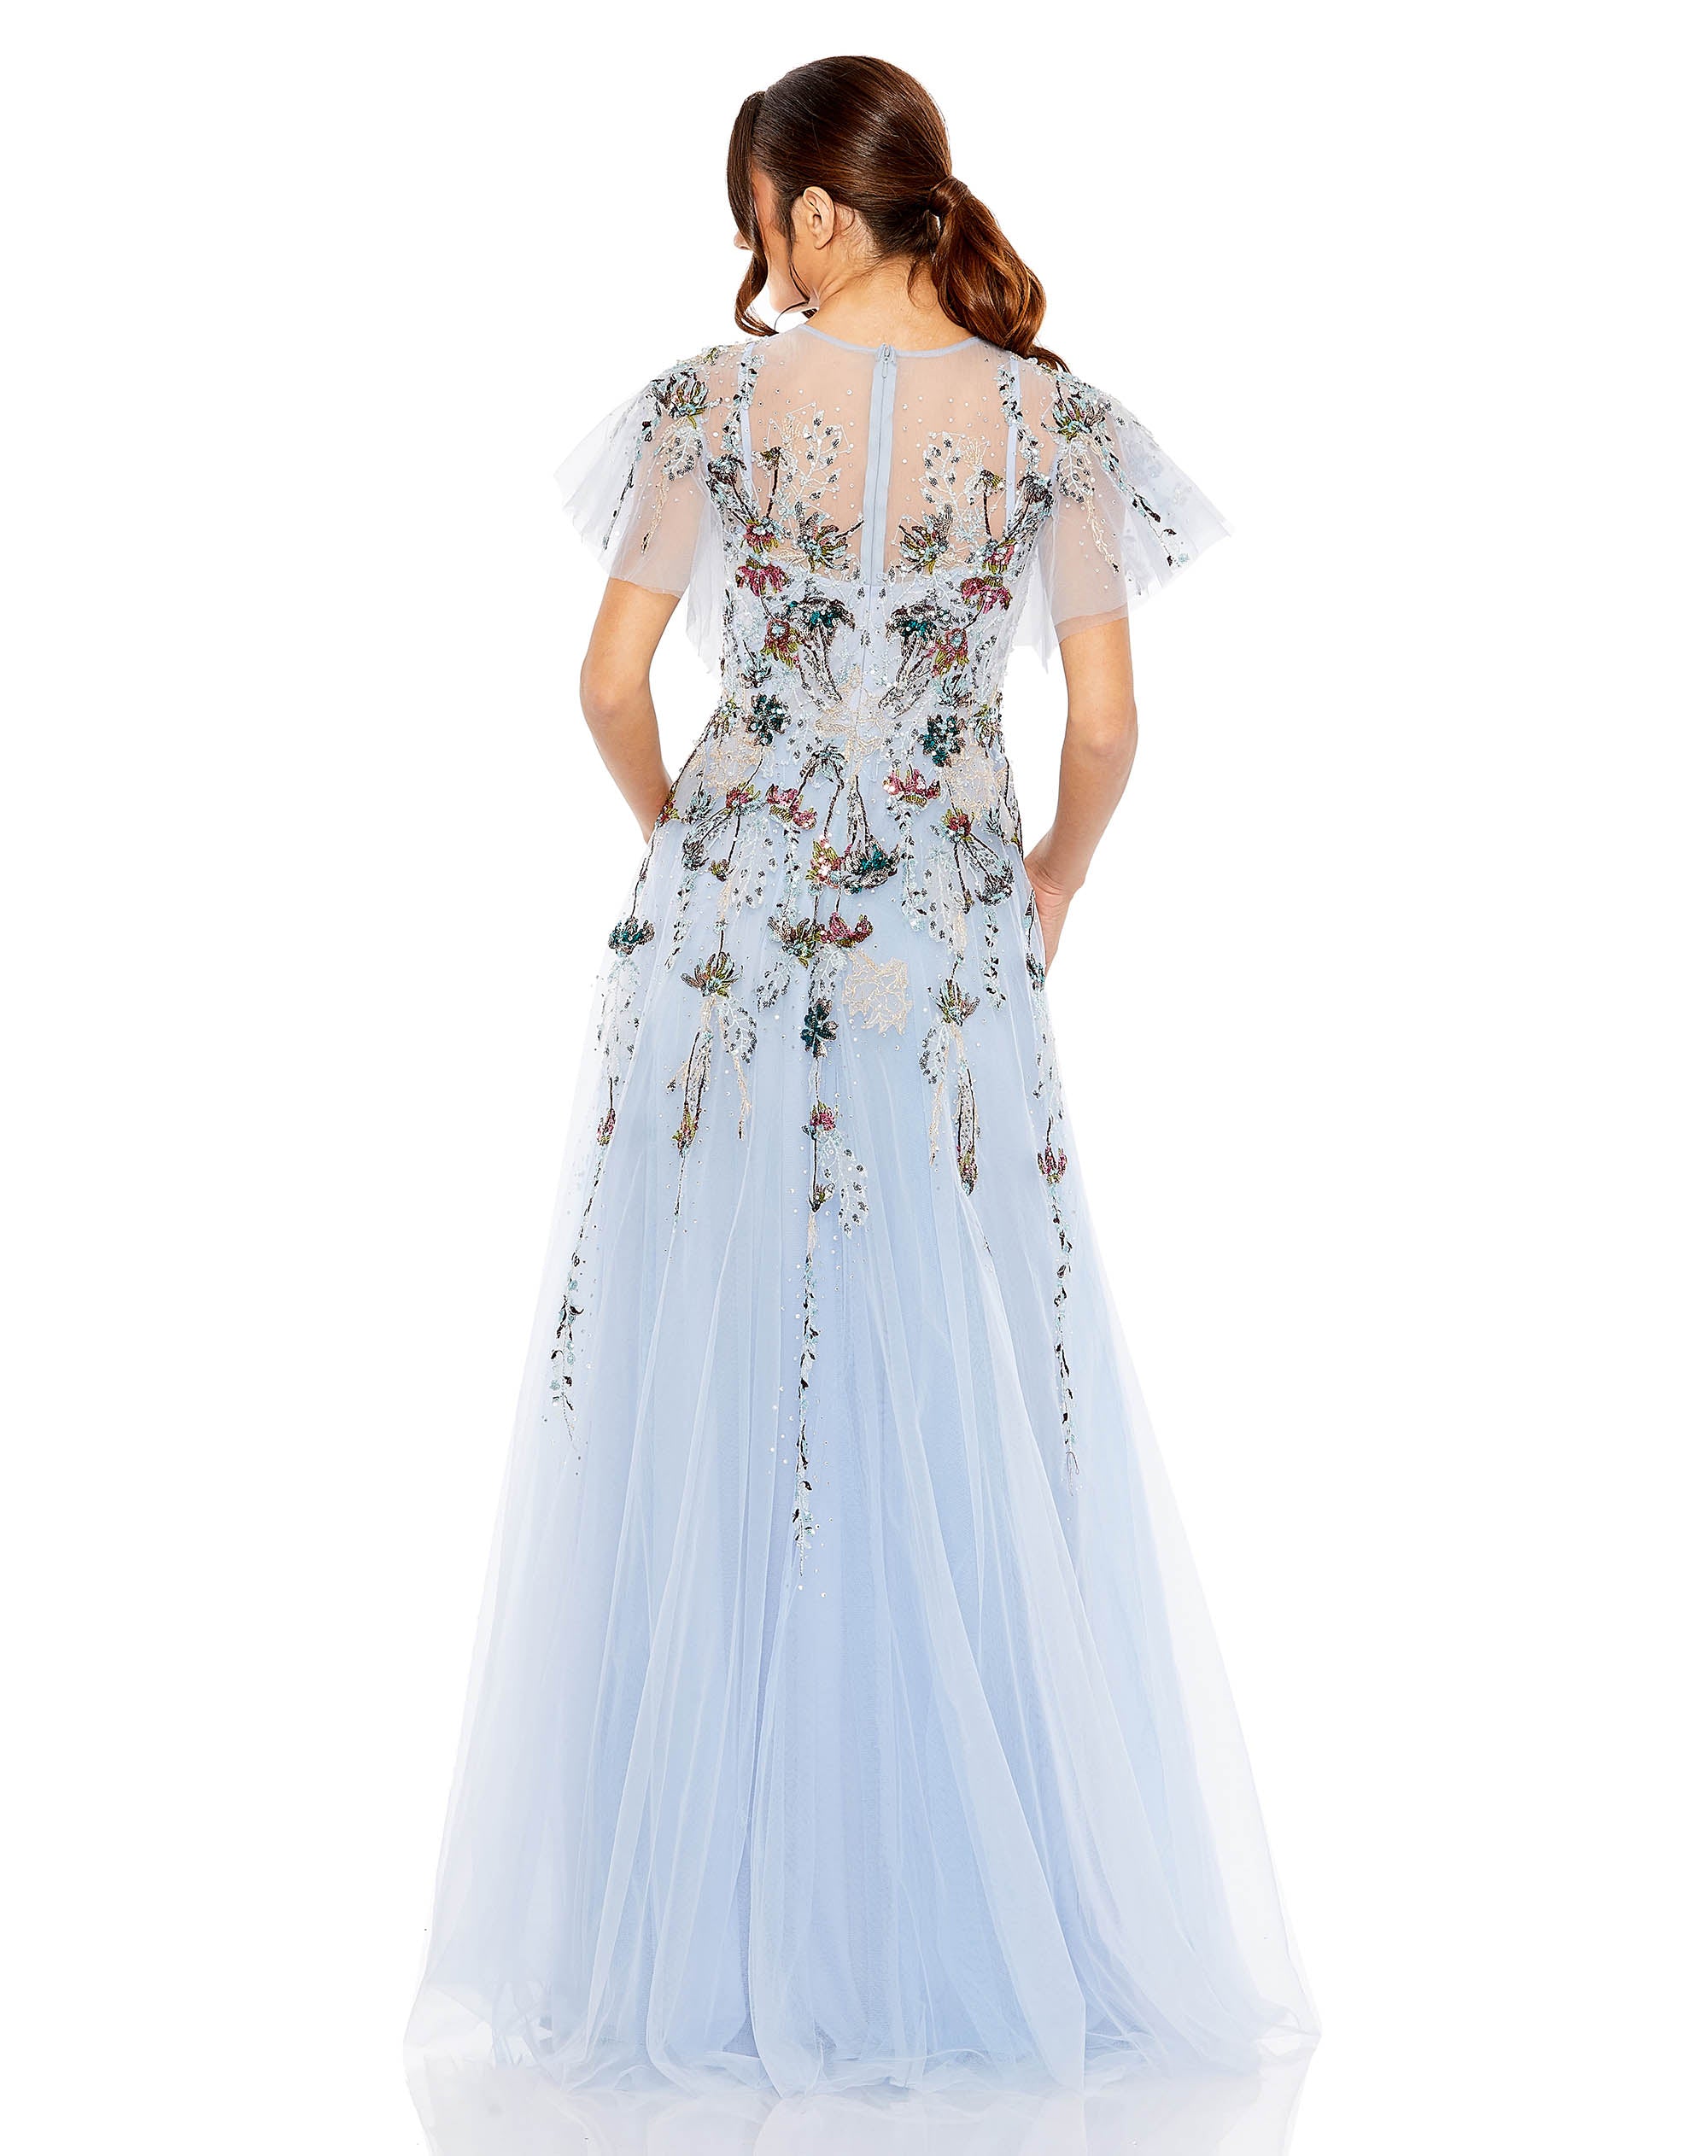 Embellished Multi Color Flutter Sleeve A-Line Dress